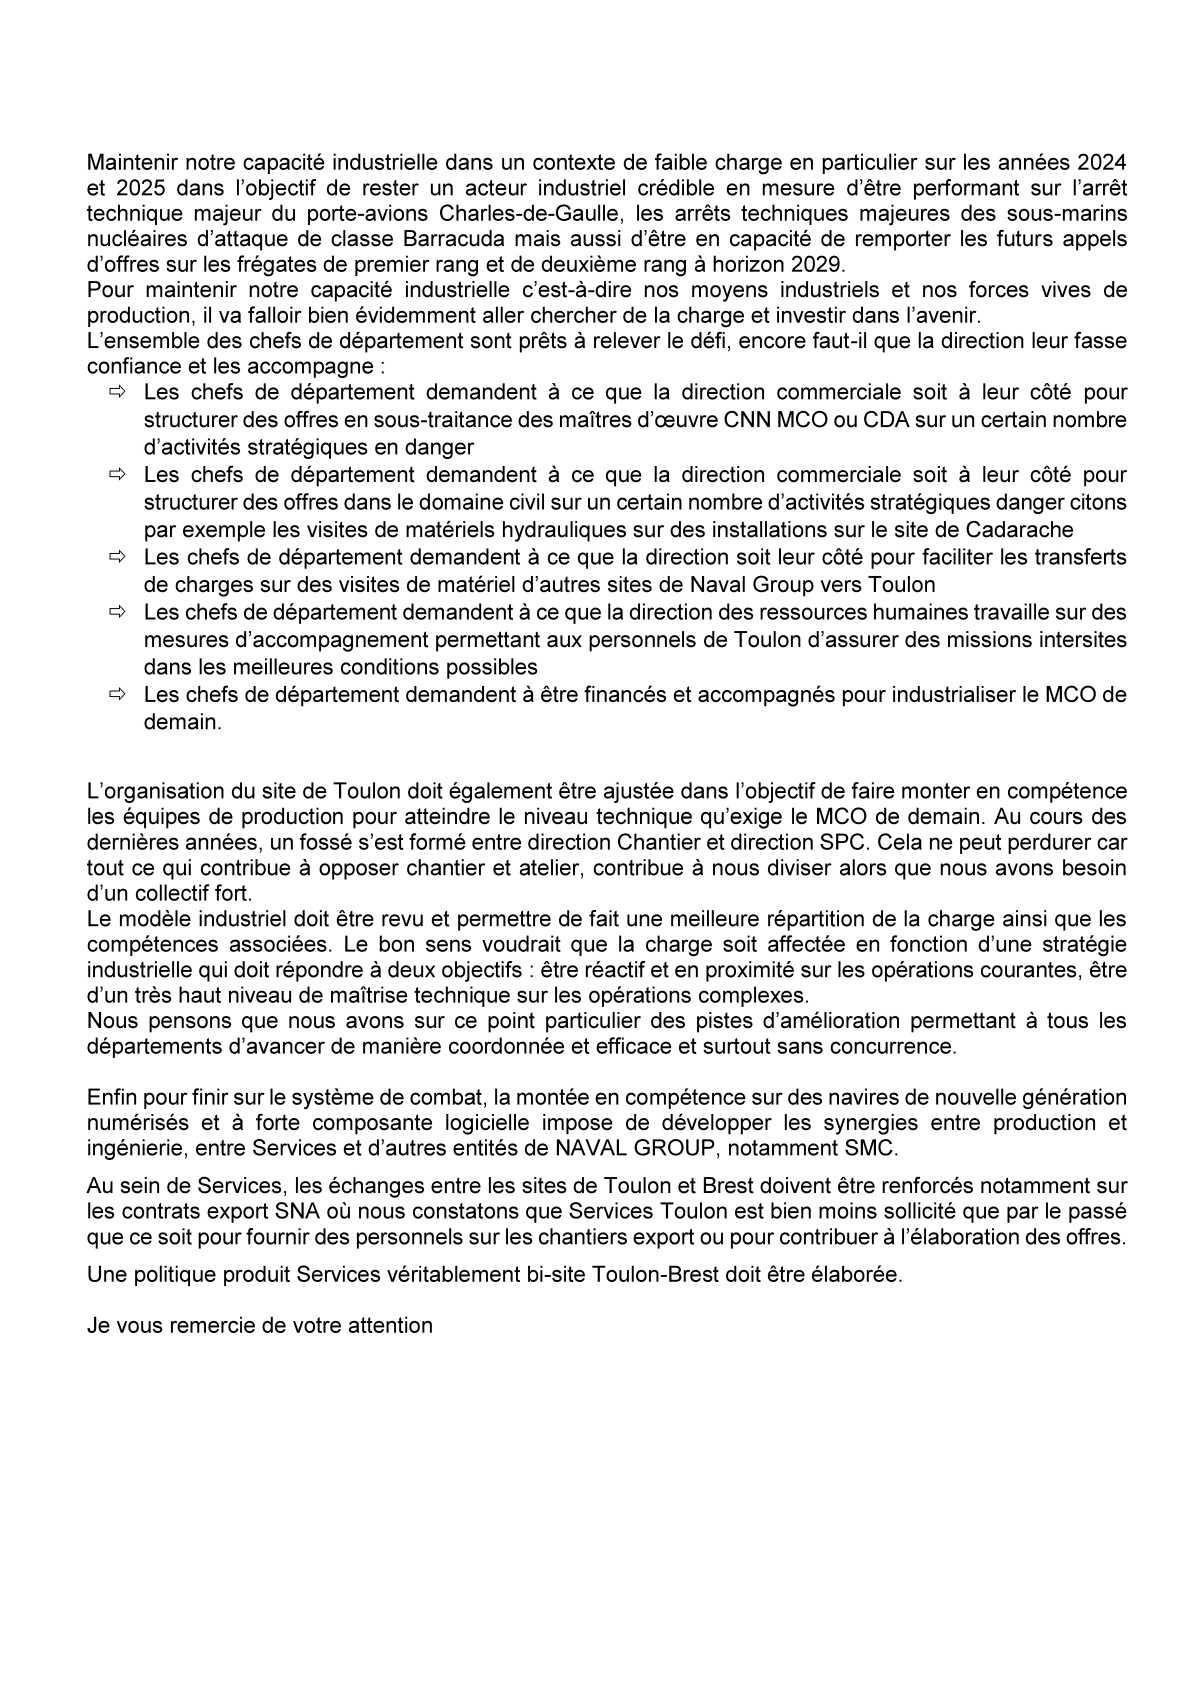 CSE de Toulon - Réunion du 4 octobre 2023 - Déclaration liminaire